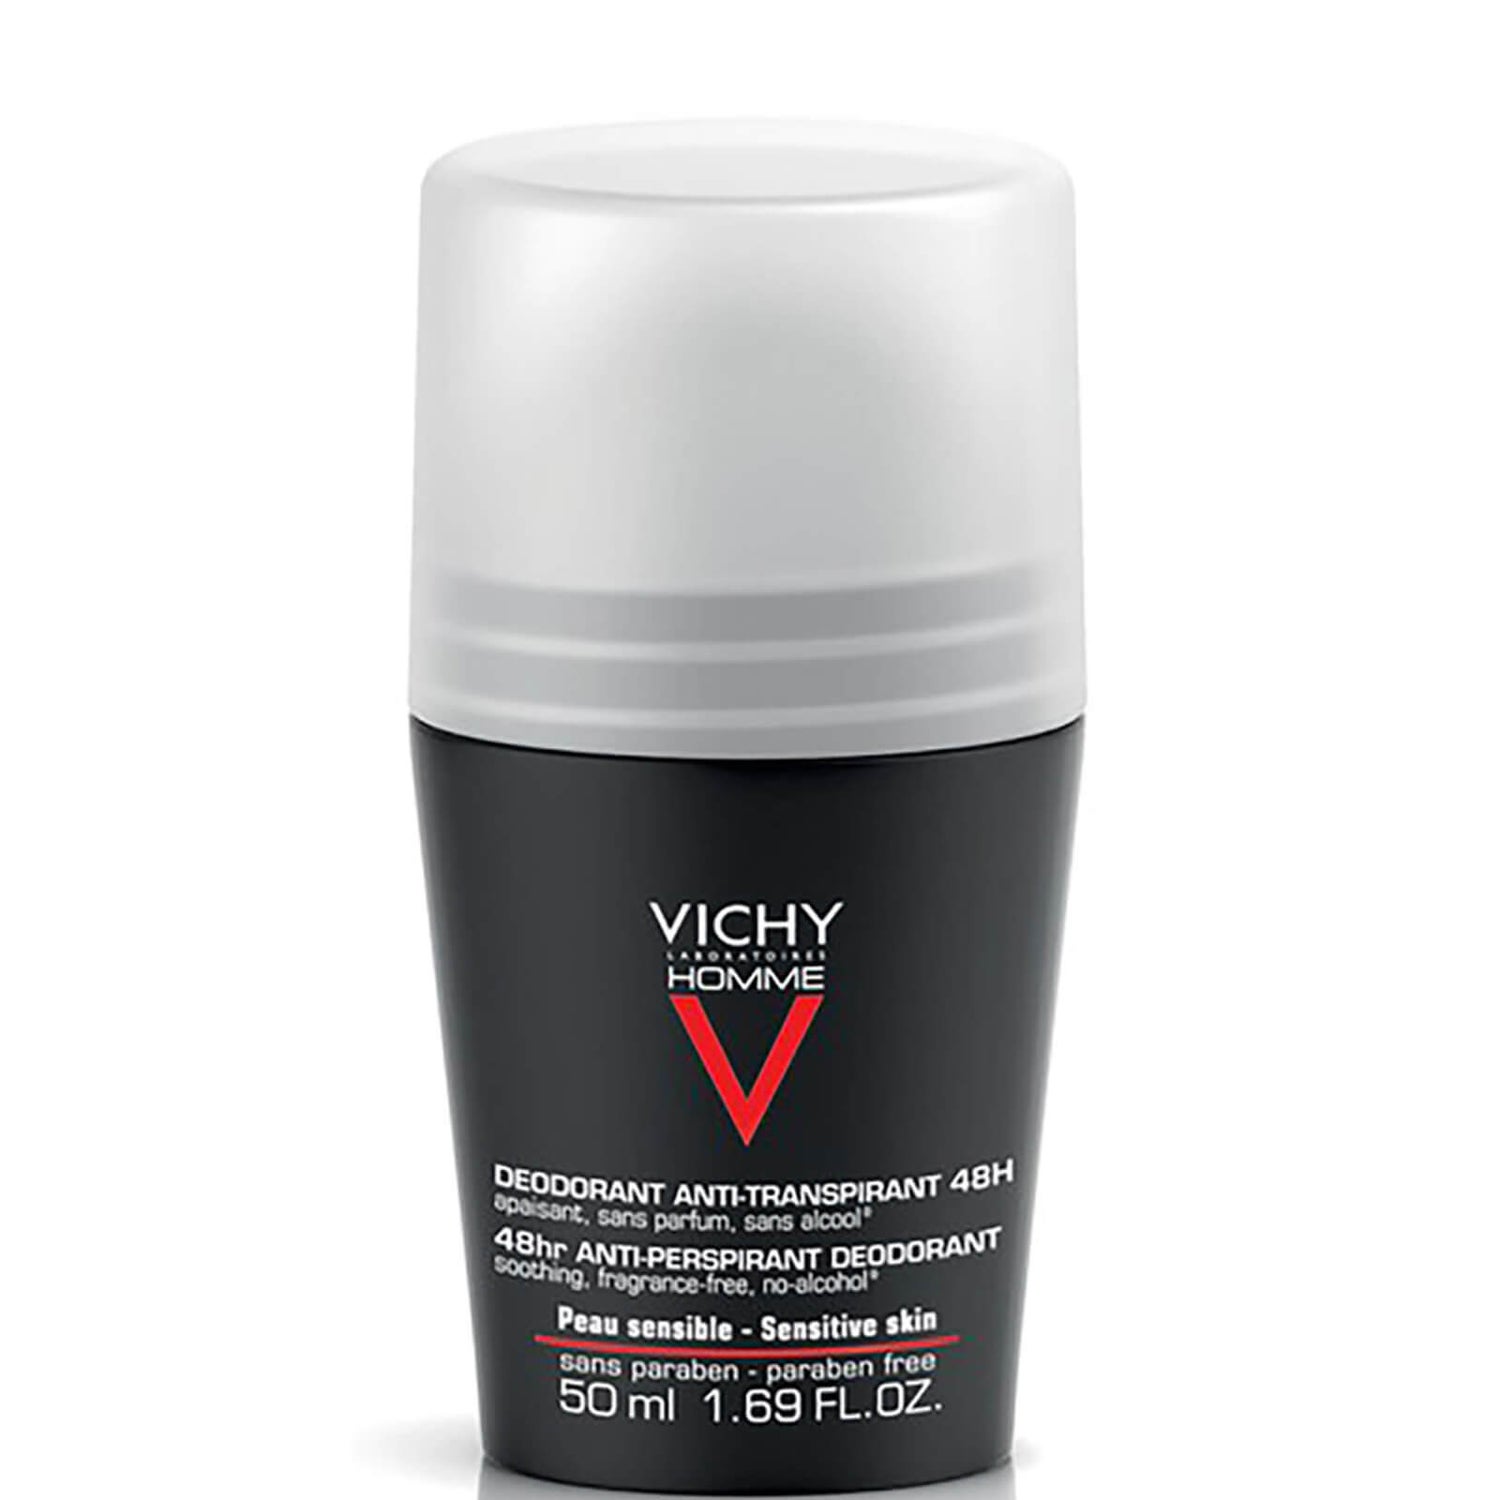 Desodorante roll-on para pieles sensibles de Vichy Homme, 50 ml